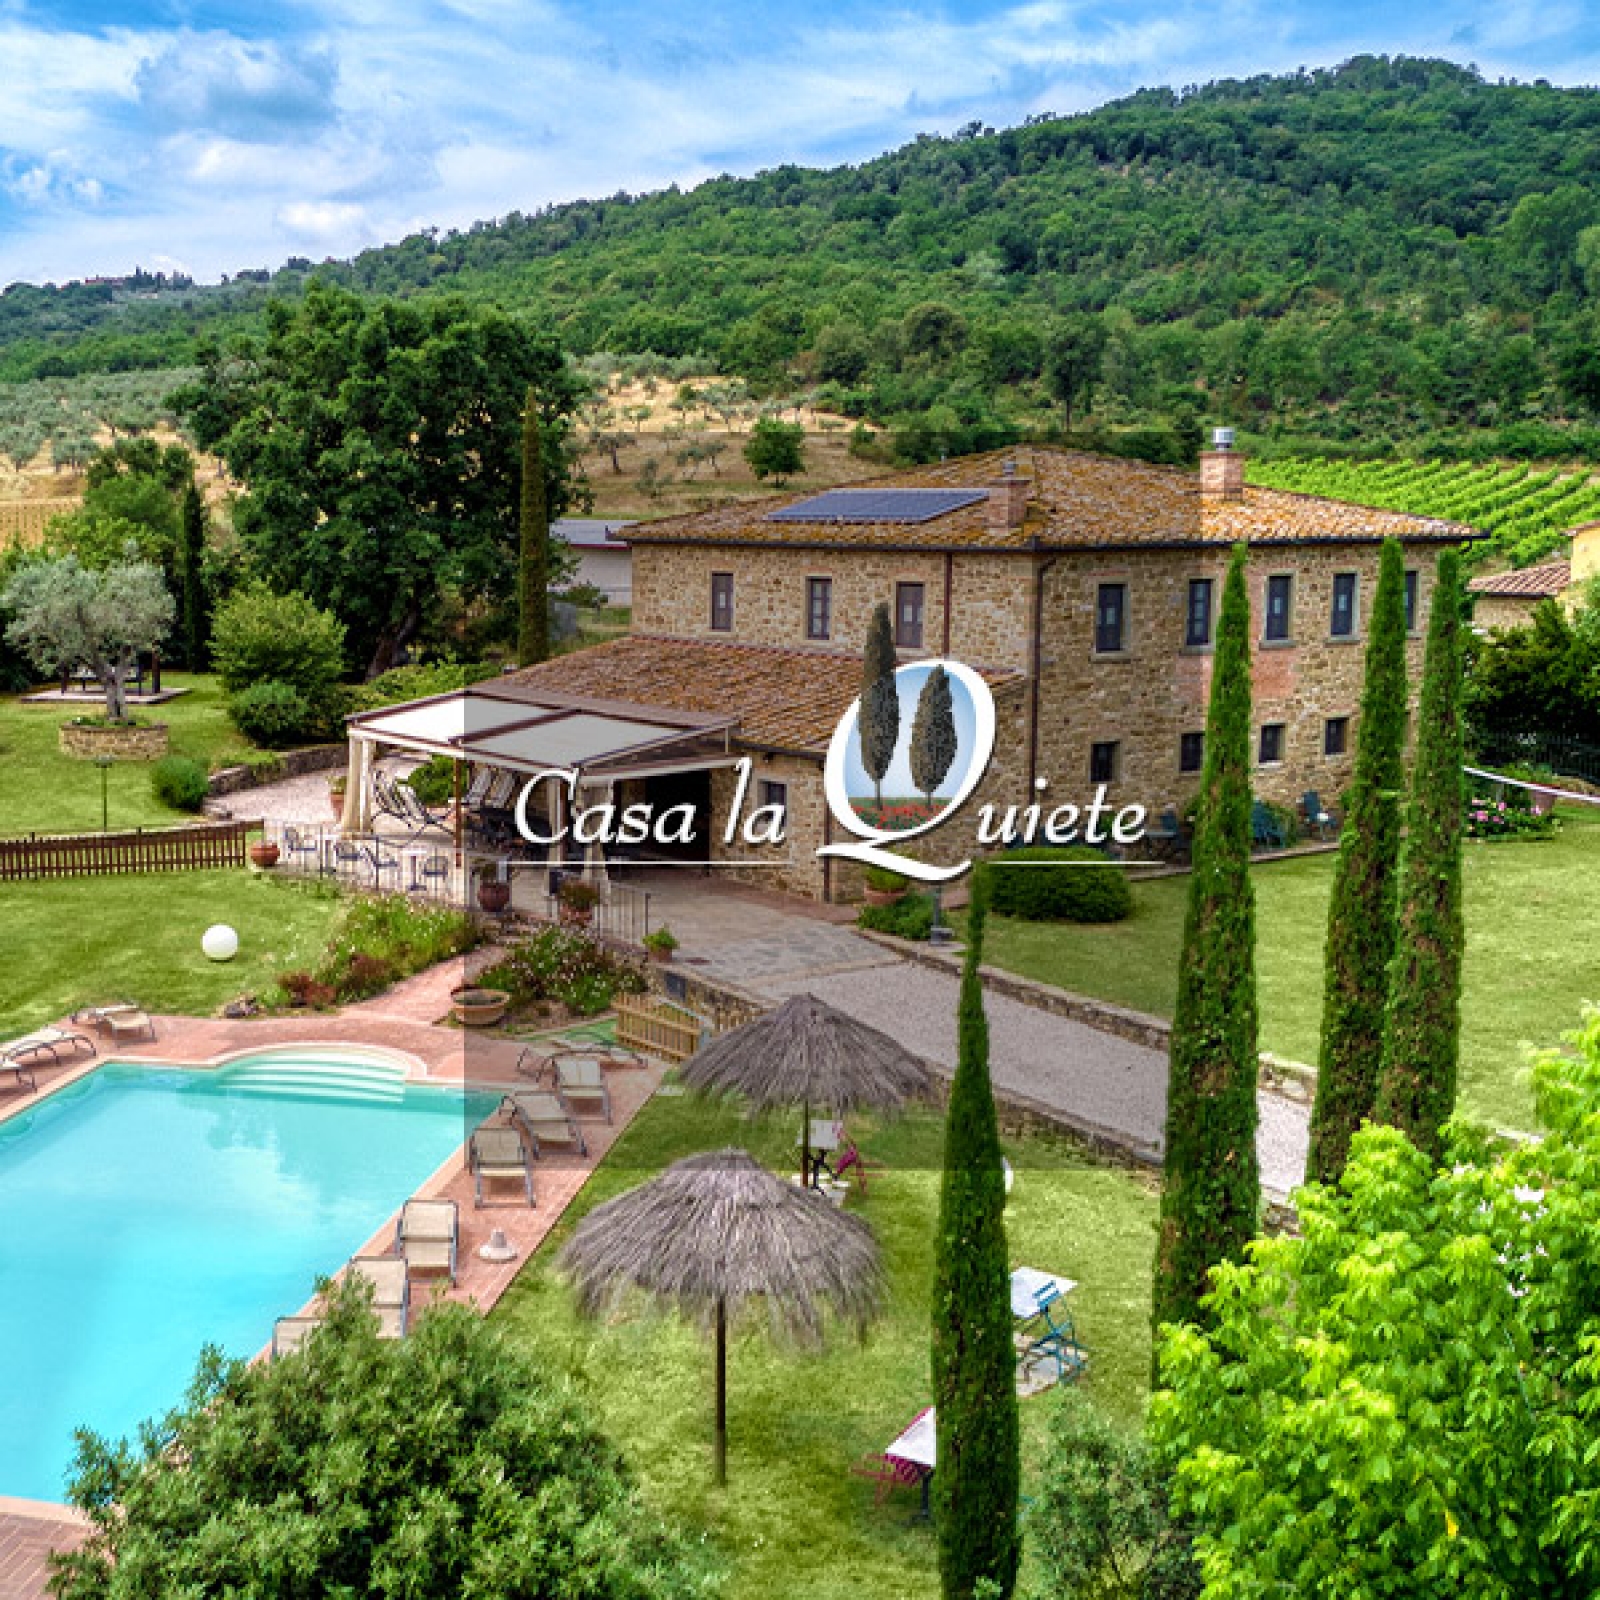 Realizzazione sito internet per Villa con piscina in affitto per turisti in Toscana